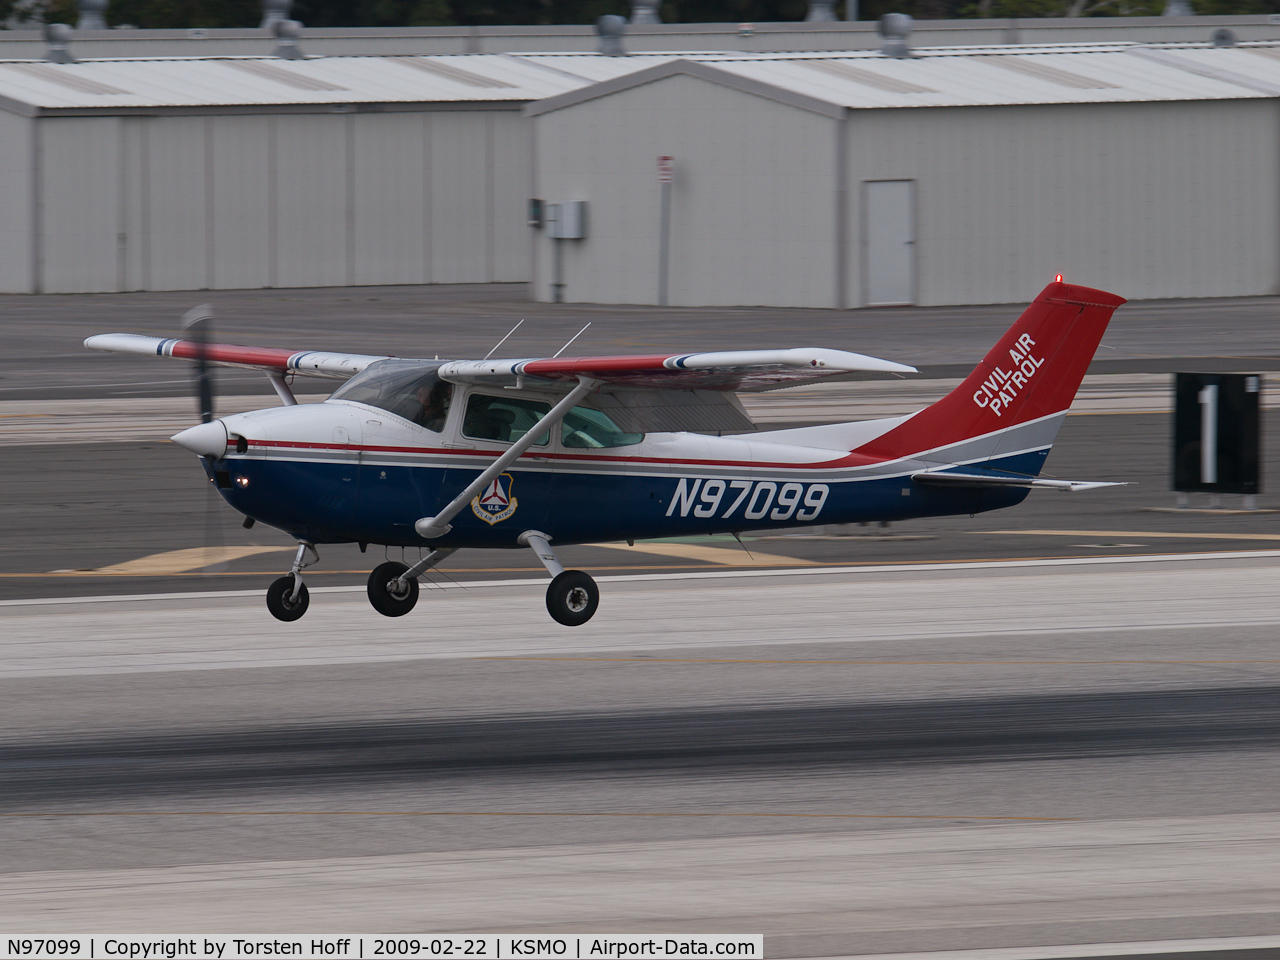 N97099, 1979 Cessna 182Q Skylane C/N 18266978, N97099 arriving on RWY 21